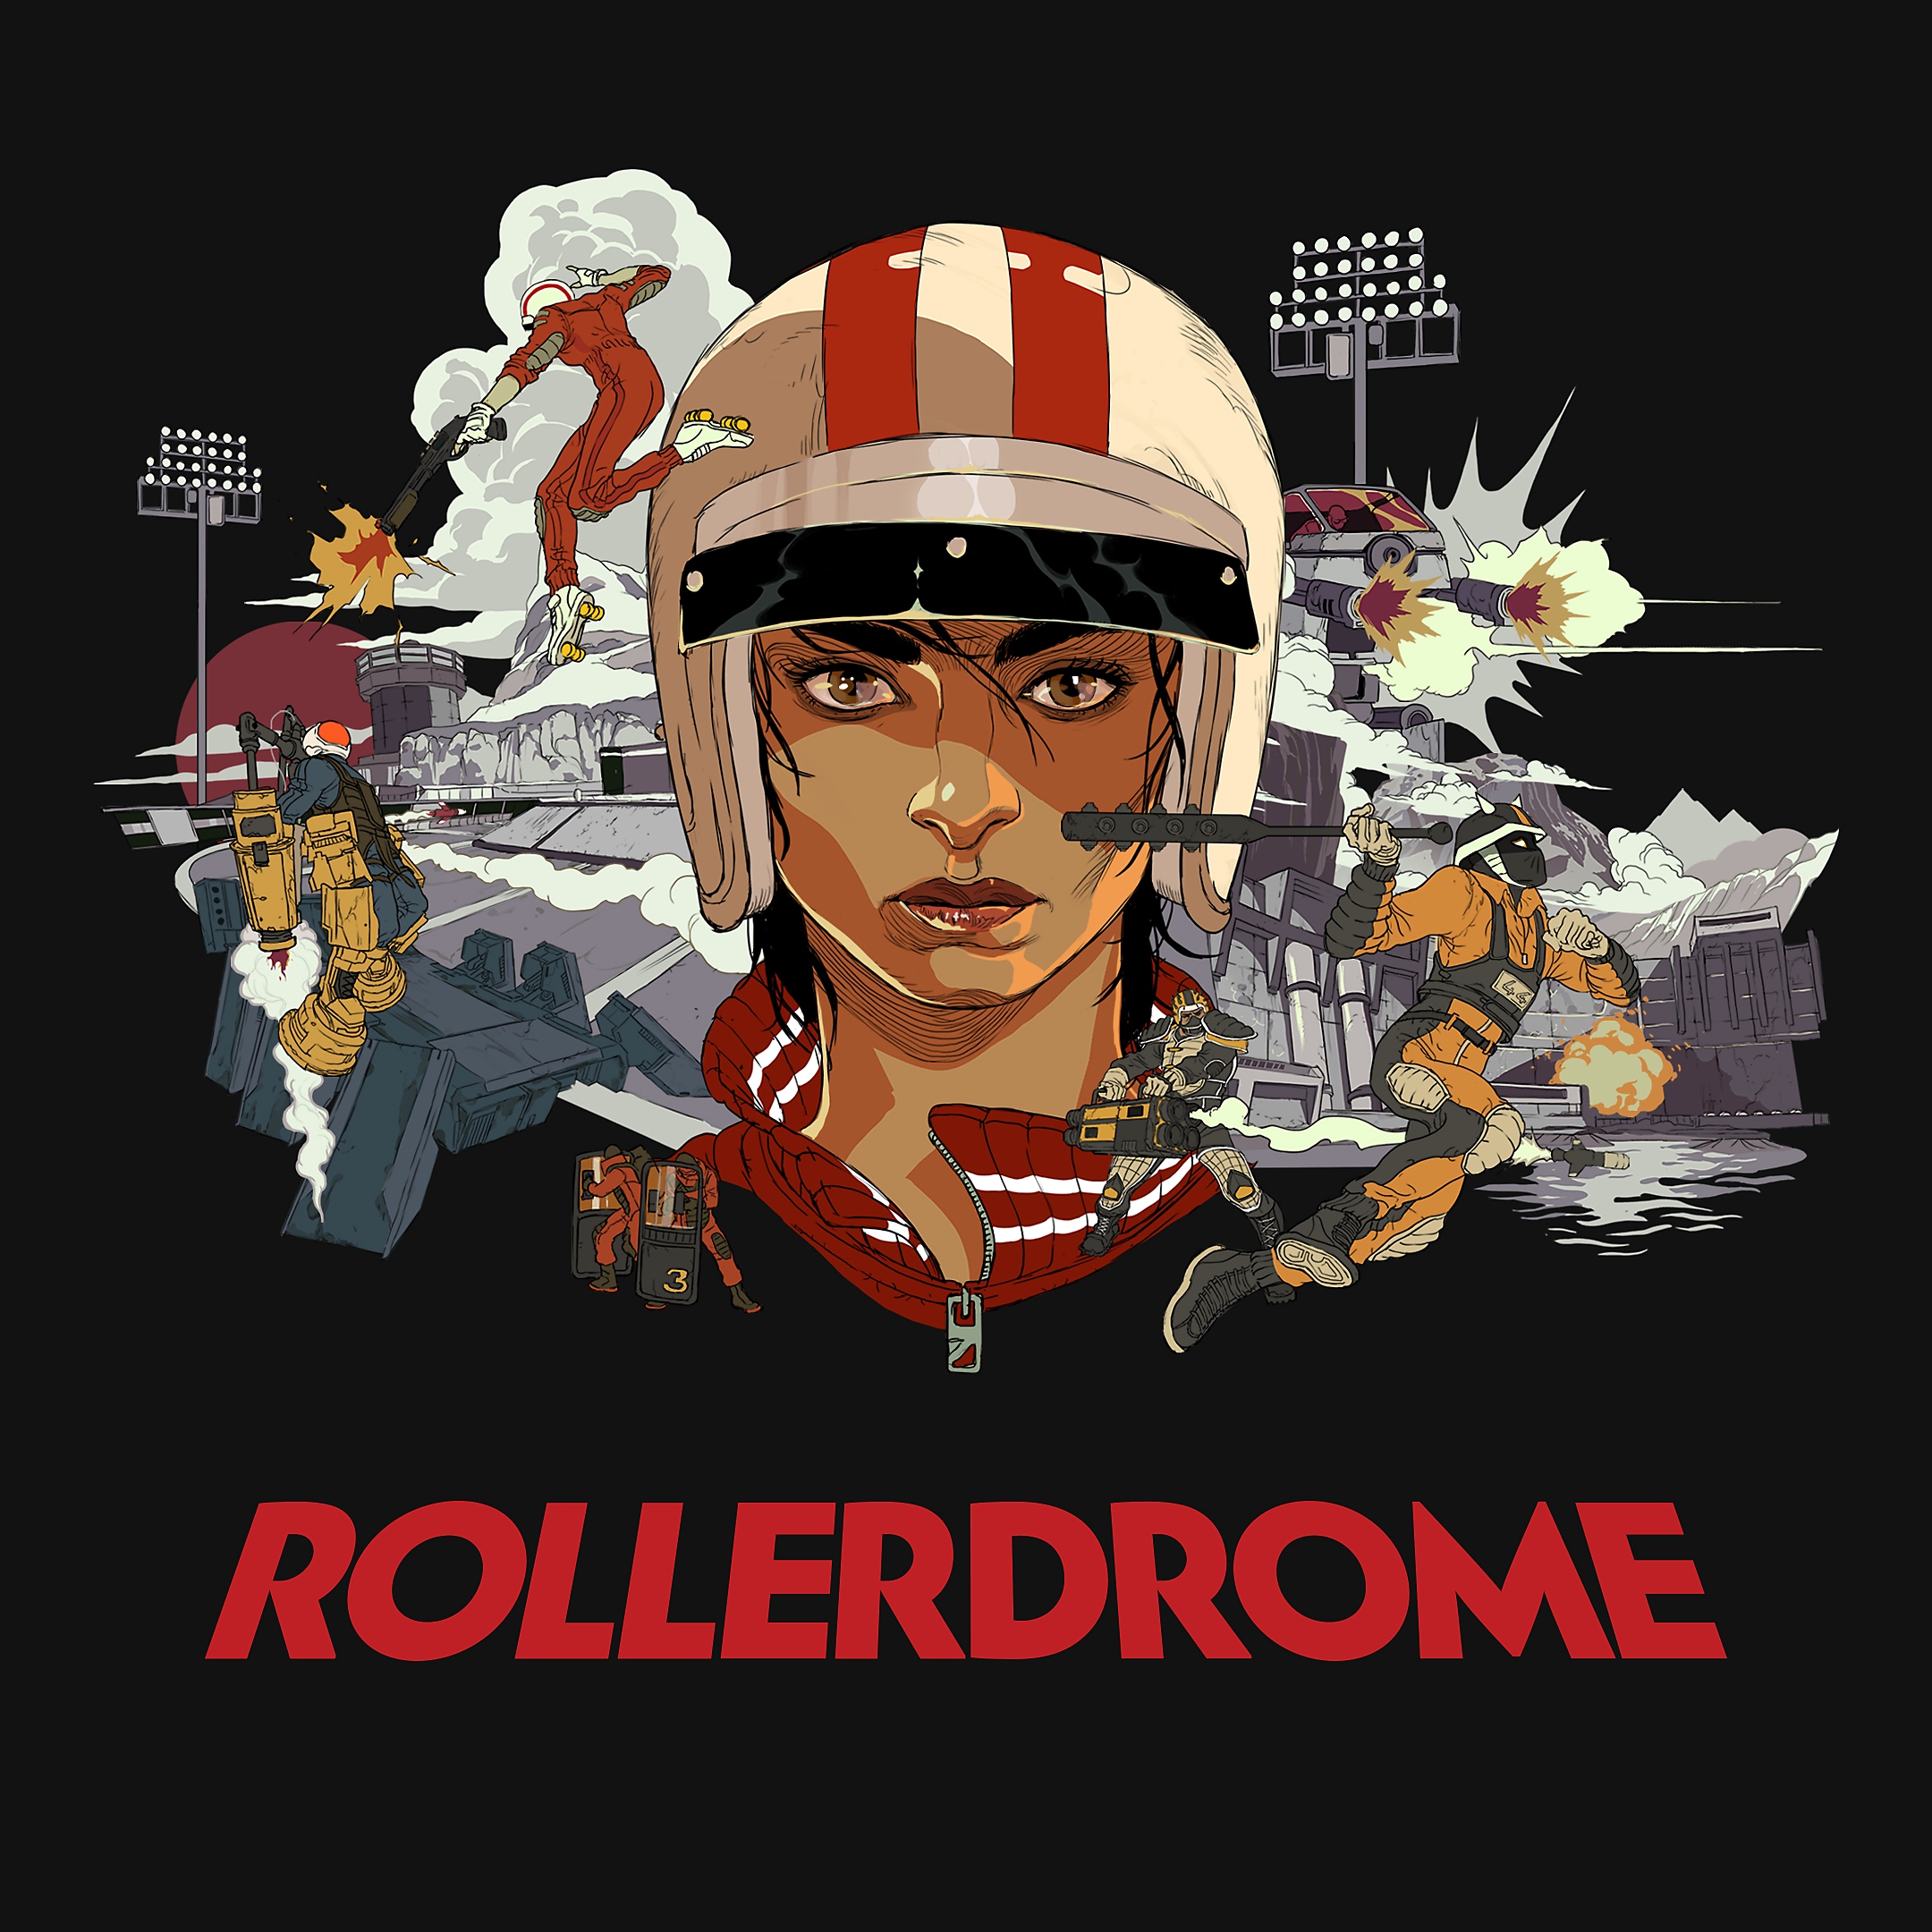 『Rollerdrome』の武器を構える主要キャラクターのキーアート22枚